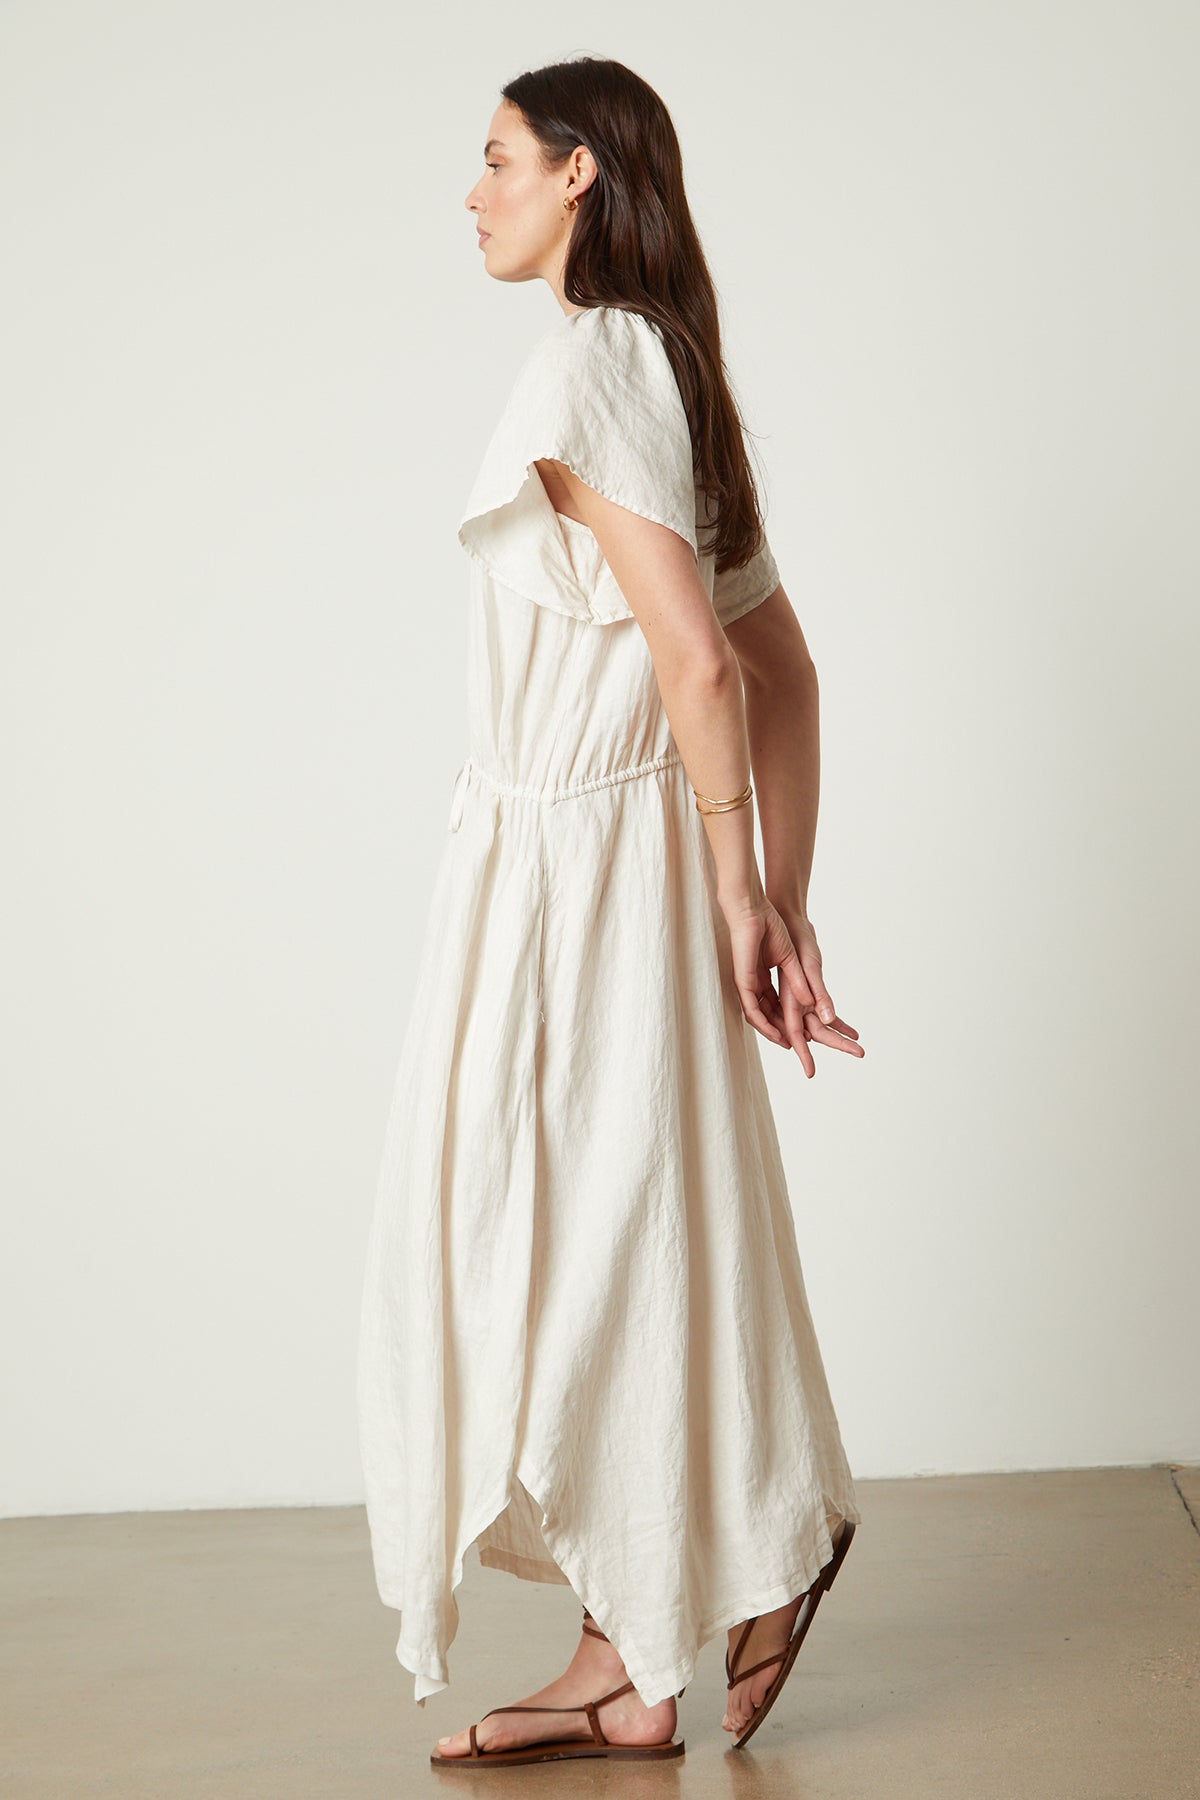 Debbie Linen Dress in cream full length side-26143134449857